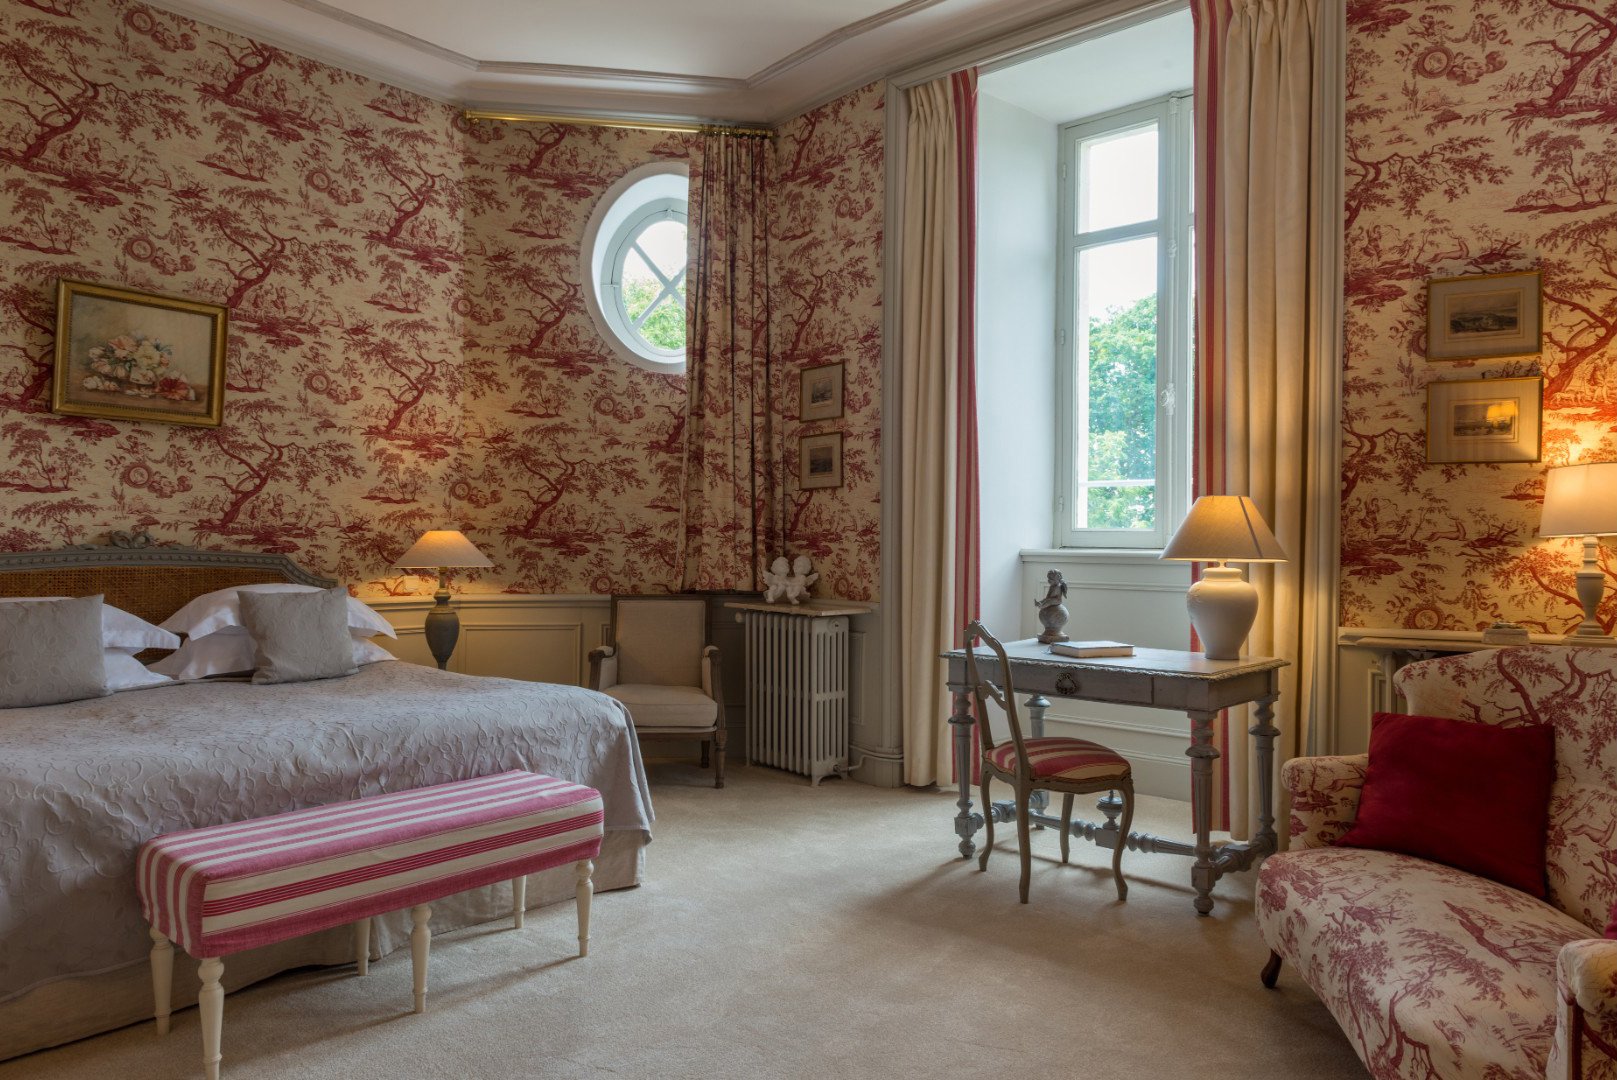 127/chambres/Chambres romantiques/Chateau de Verrieres-chambre-romantique-3-pax-7061 copie.jpg